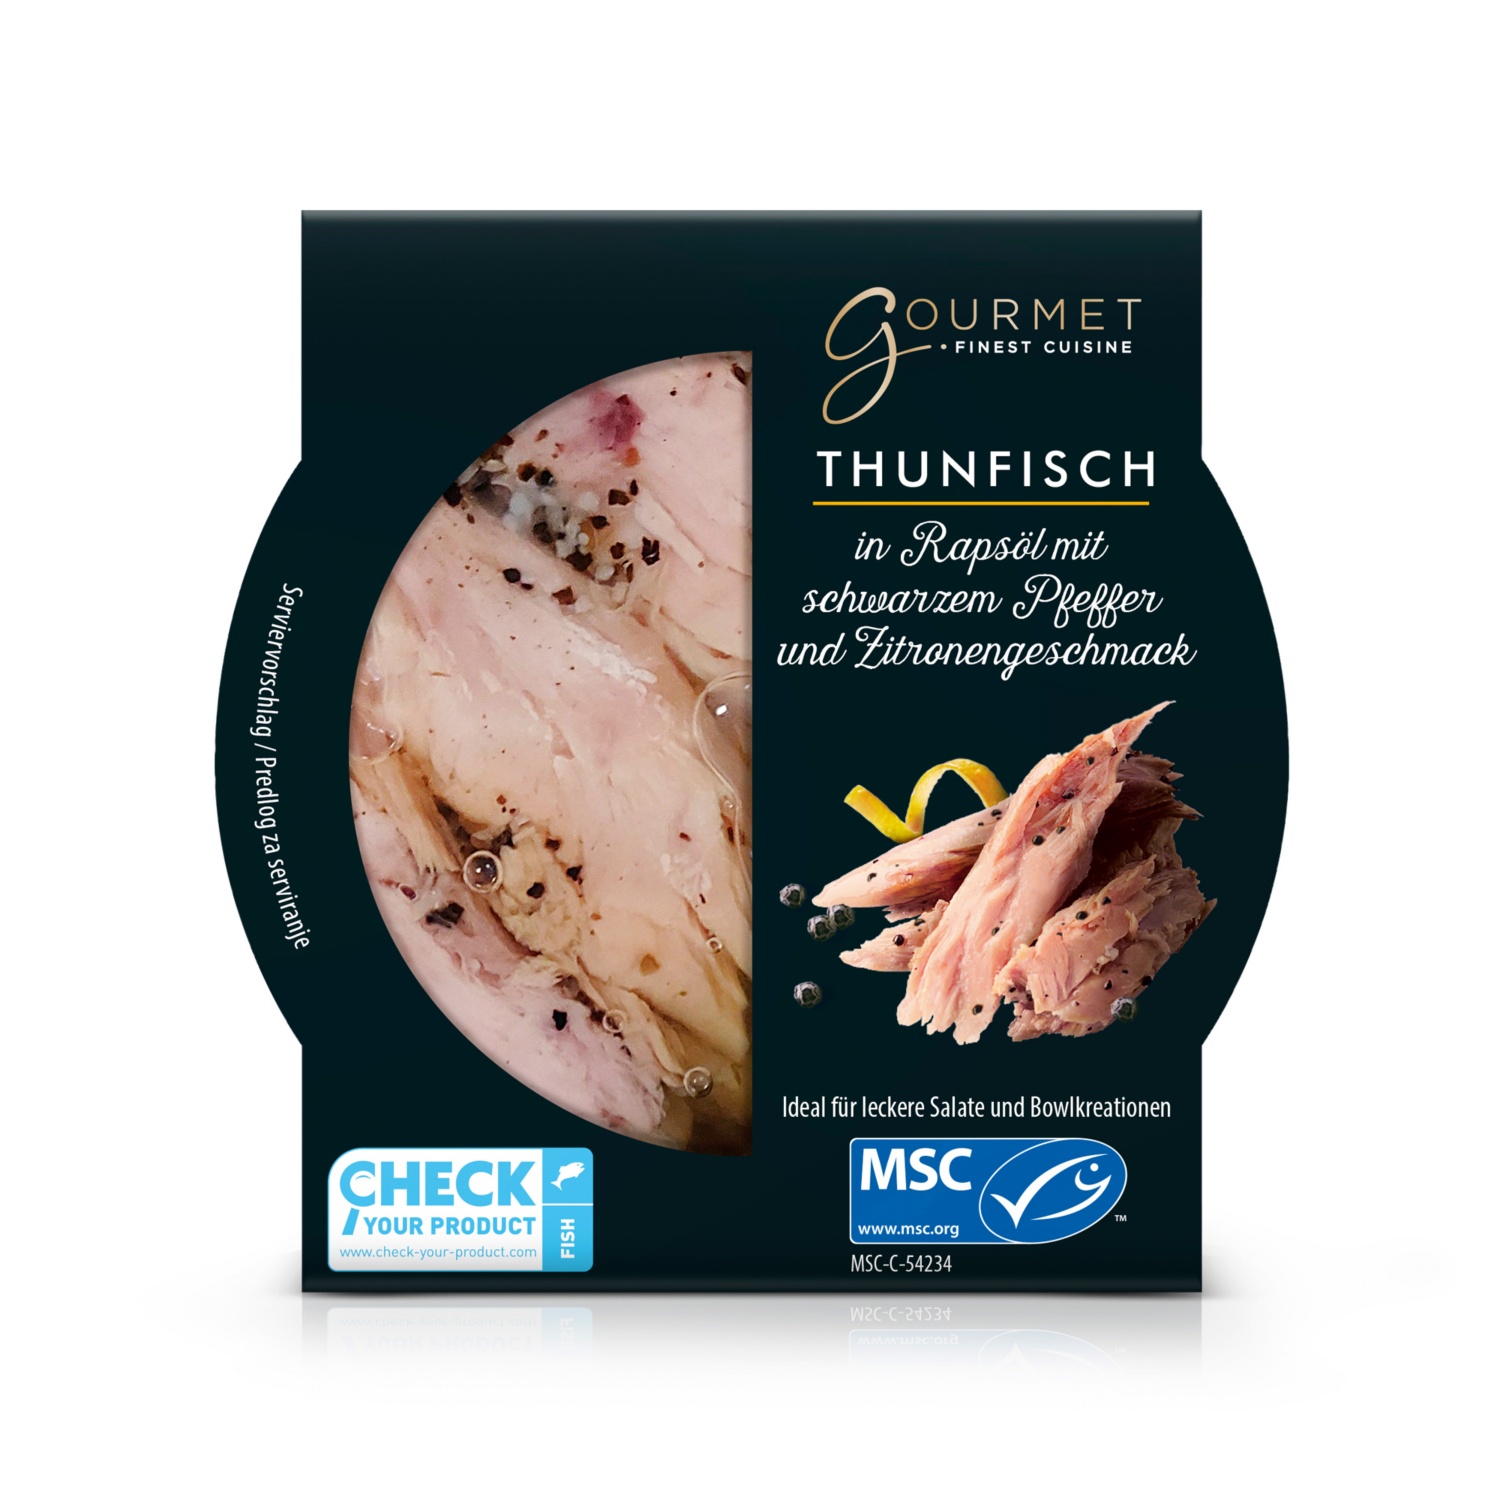 MSC Thunfischfilet Mix in Rapsöl mit schwarzem Pfeffer und Zitrone